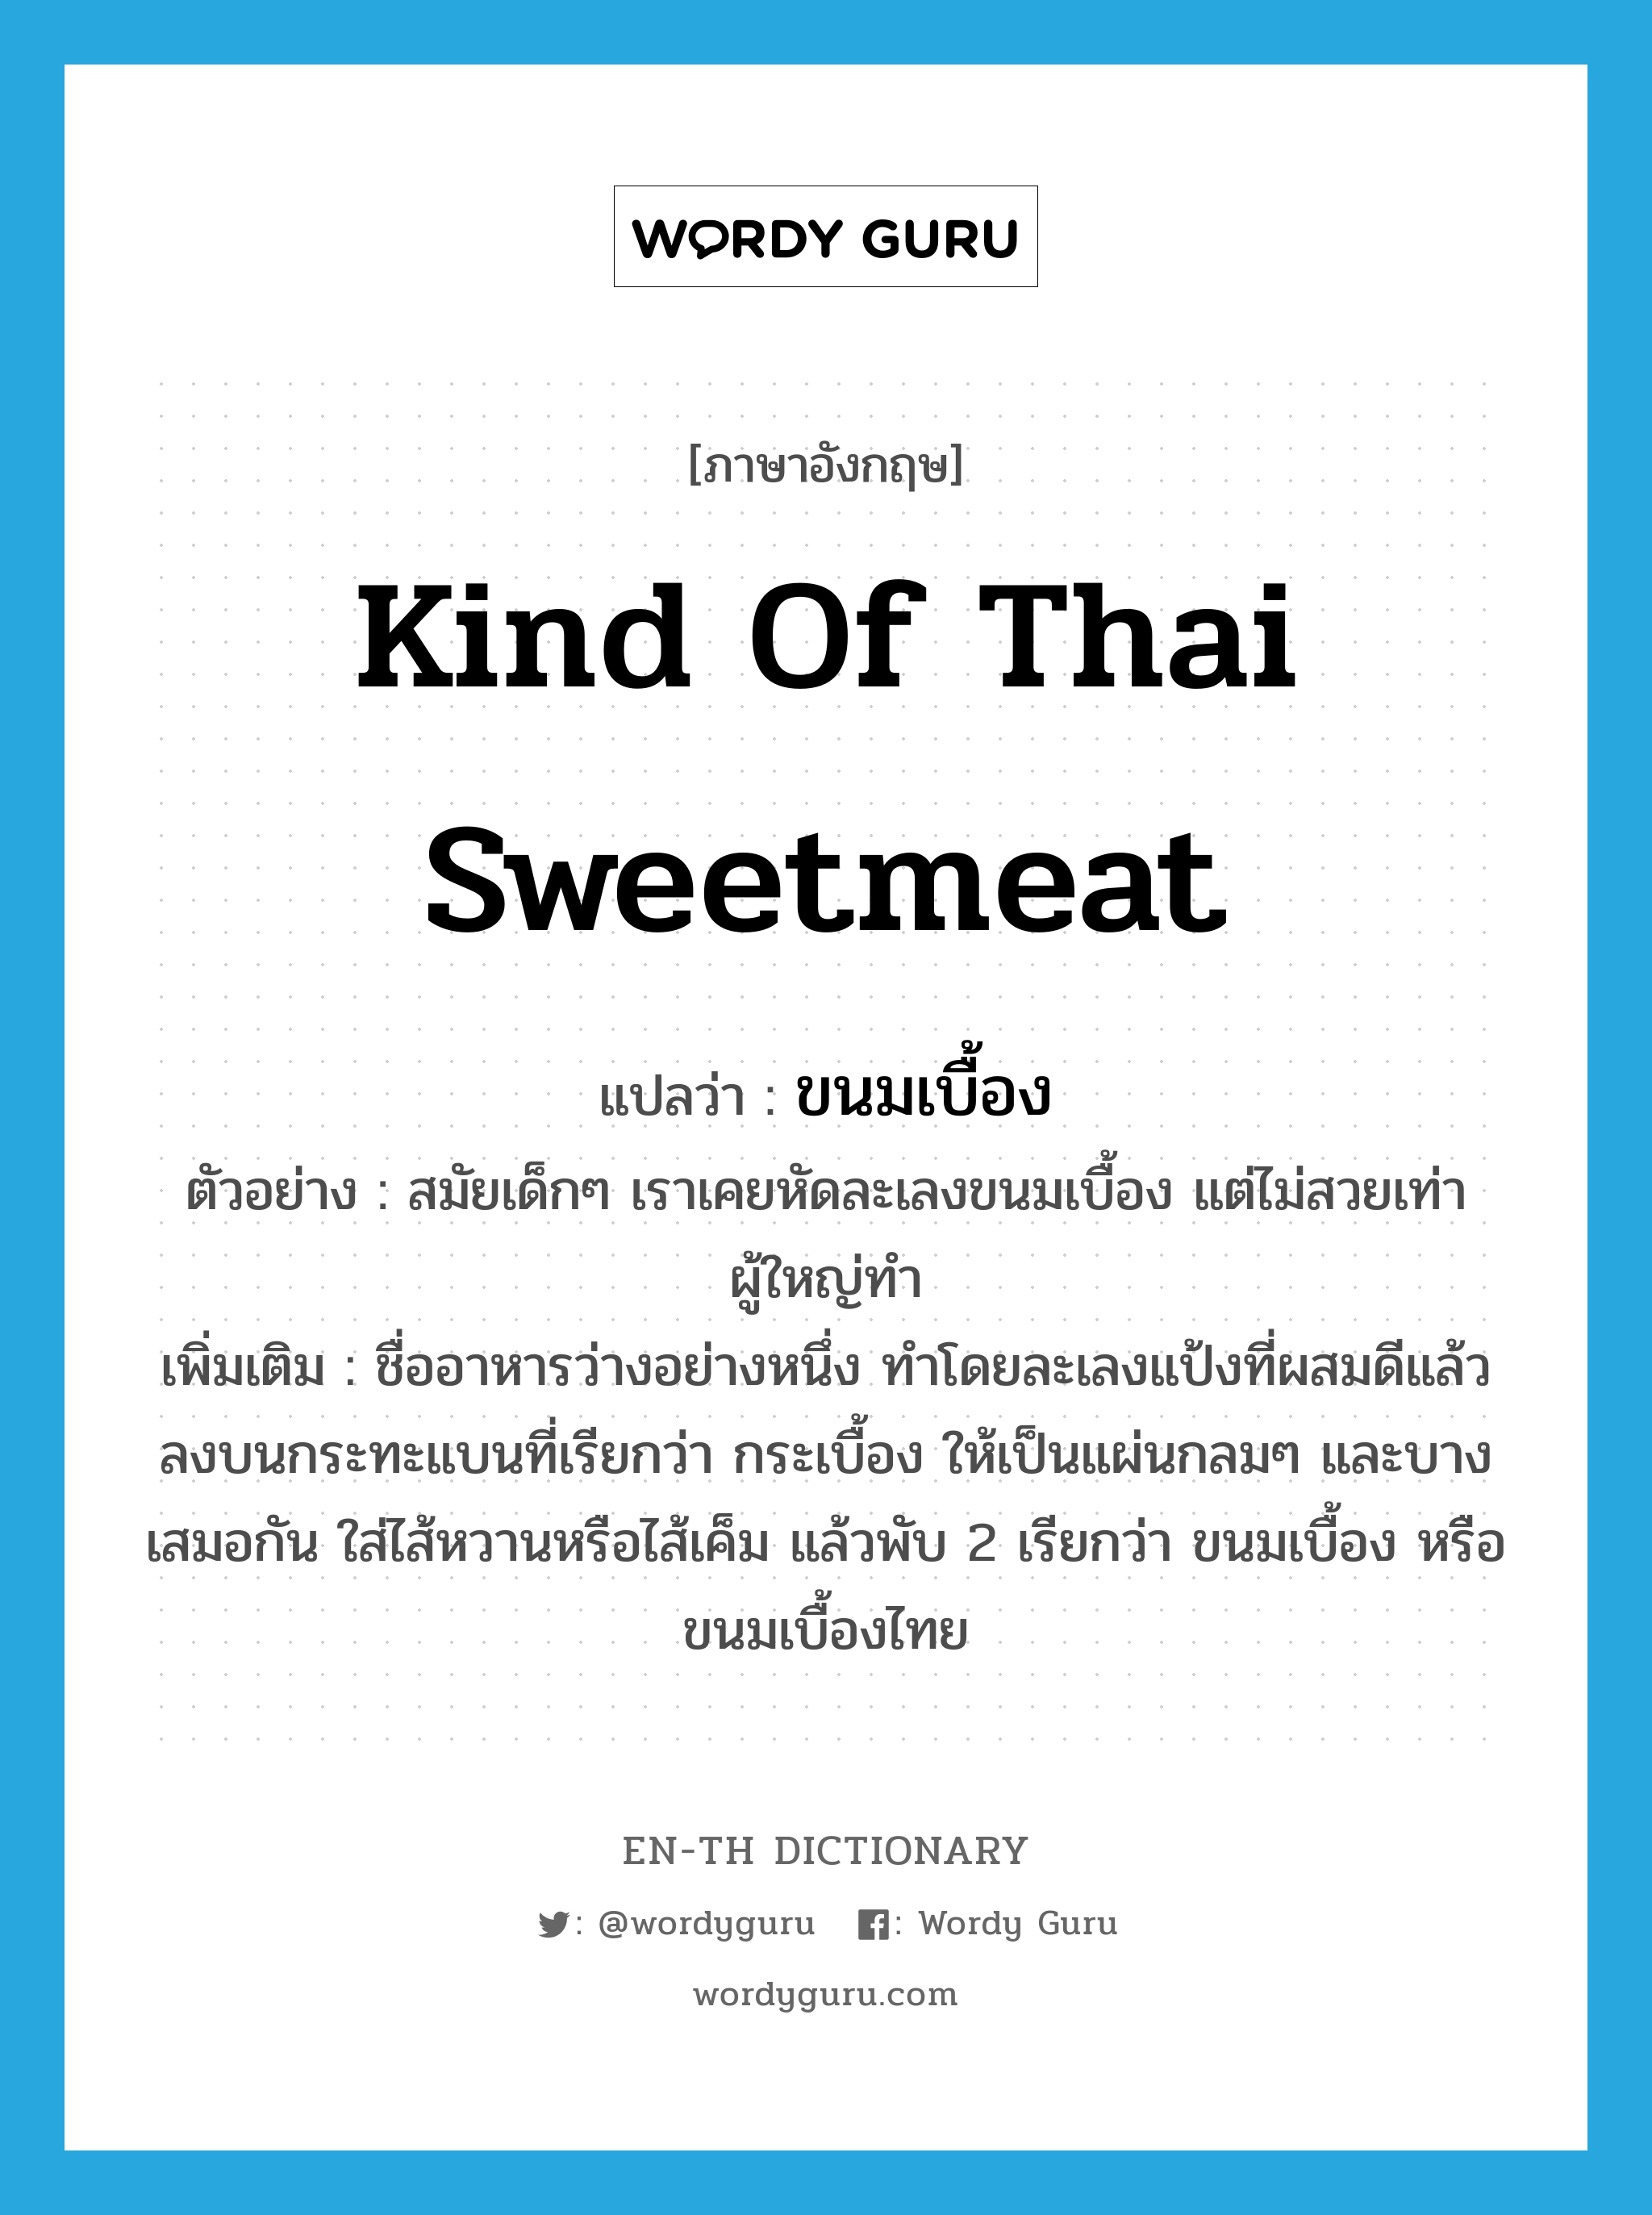 kind of Thai sweetmeat แปลว่า?, คำศัพท์ภาษาอังกฤษ kind of Thai sweetmeat แปลว่า ขนมเบื้อง ประเภท N ตัวอย่าง สมัยเด็กๆ เราเคยหัดละเลงขนมเบื้อง แต่ไม่สวยเท่าผู้ใหญ่ทำ เพิ่มเติม ชื่ออาหารว่างอย่างหนึ่ง ทำโดยละเลงแป้งที่ผสมดีแล้วลงบนกระทะแบนที่เรียกว่า กระเบื้อง ให้เป็นแผ่นกลมๆ และบางเสมอกัน ใส่ไส้หวานหรือไส้เค็ม แล้วพับ 2 เรียกว่า ขนมเบื้อง หรือ ขนมเบื้องไทย หมวด N